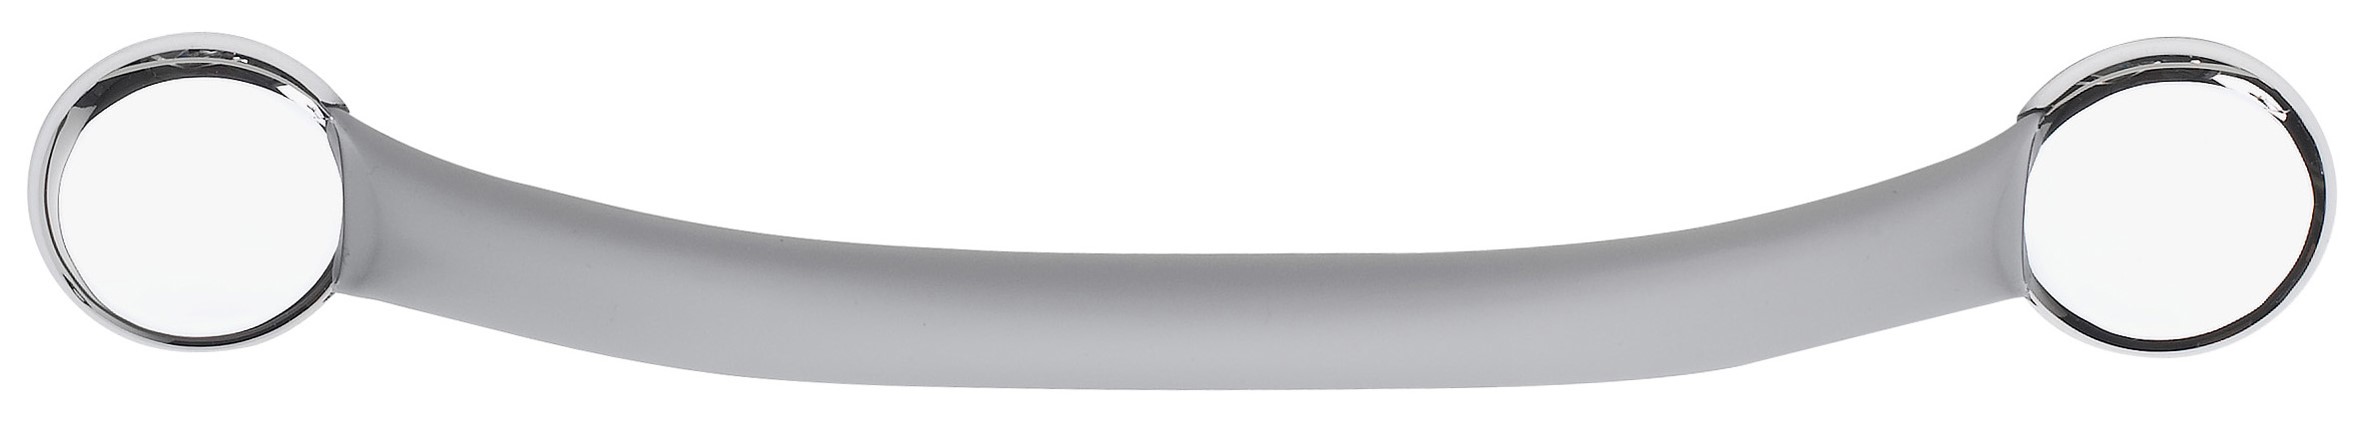 Barre de Maintien Droite Toucher Soft 37cm ∅25mm Inox Gris - GODONNIER